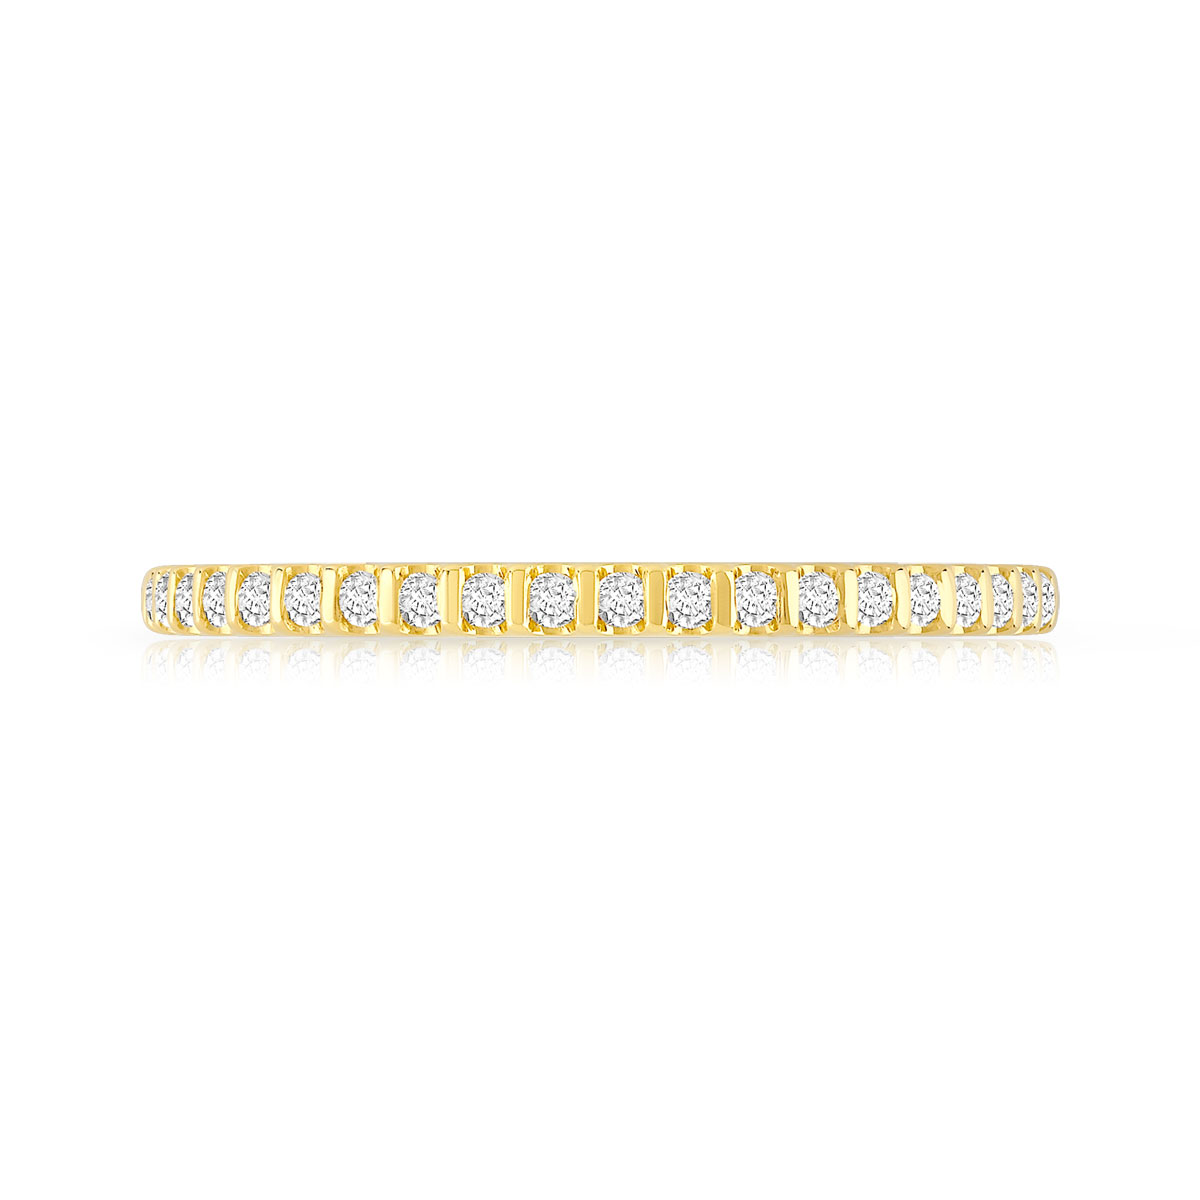 Alliance demi-T or 750 jaune diamants synthétiques 0.15 carat - vue 3